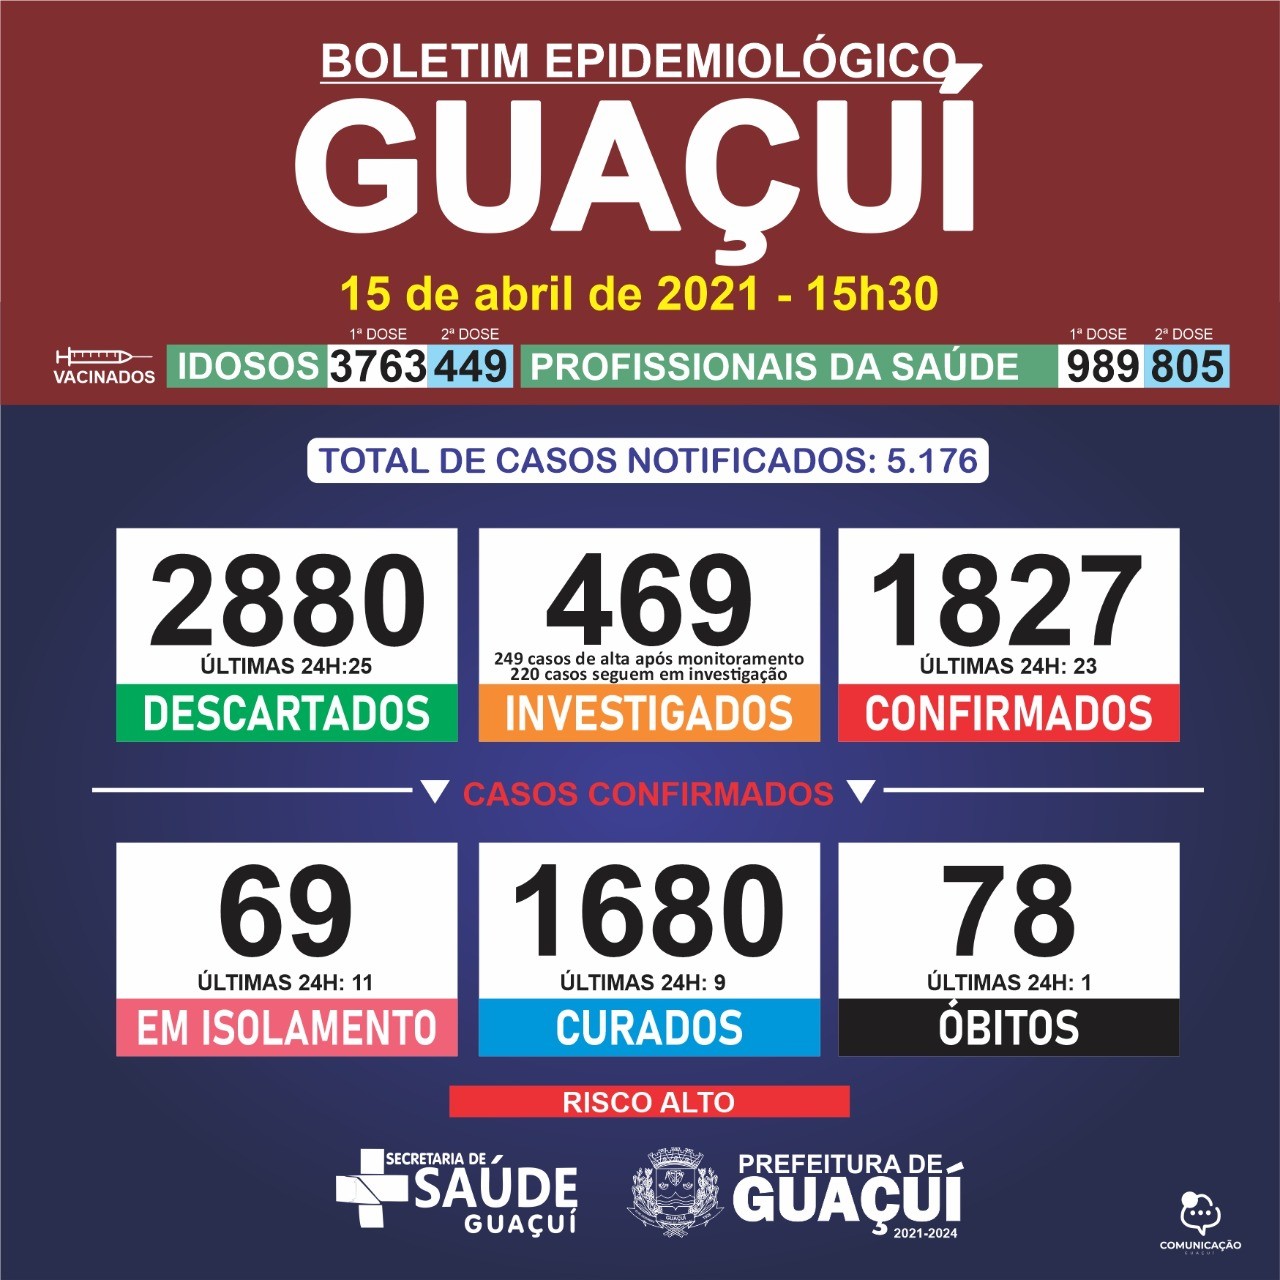 Boletim Epidemiológico 15/04/21: Guaçuí registra 1 óbito, 9 curados e 23 casos confirmados nas últimas 24 horas